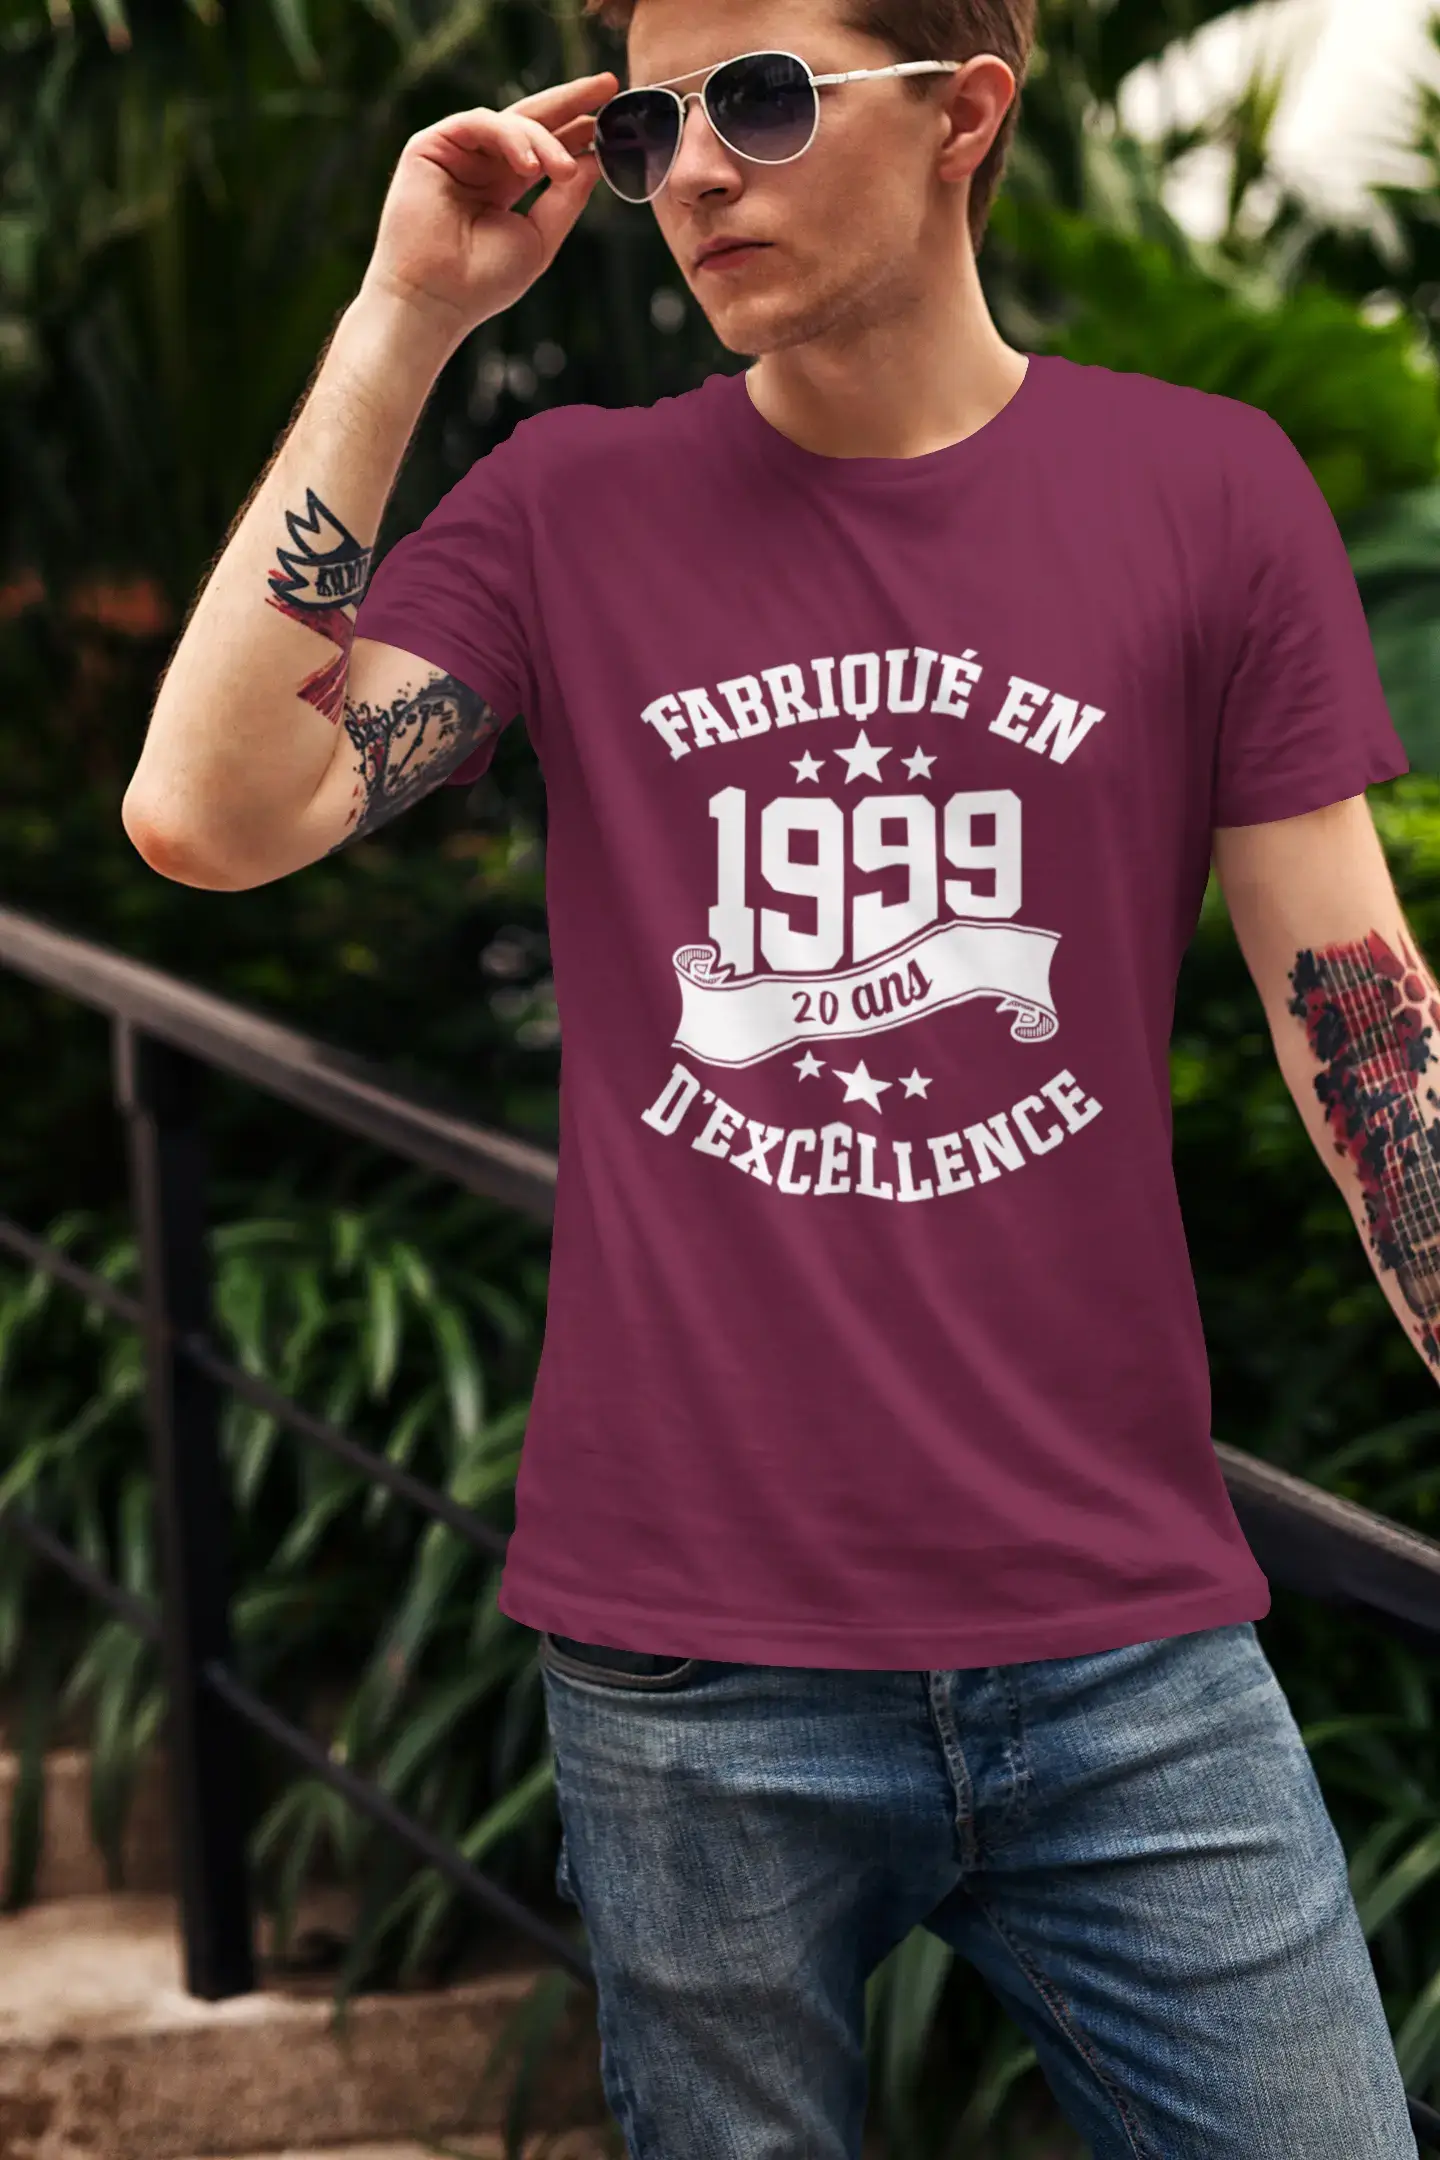 ULTRABASIC – Hergestellt im Jahr 1999, 20 Jahre altes Unisex-T-Shirt Bordeaux